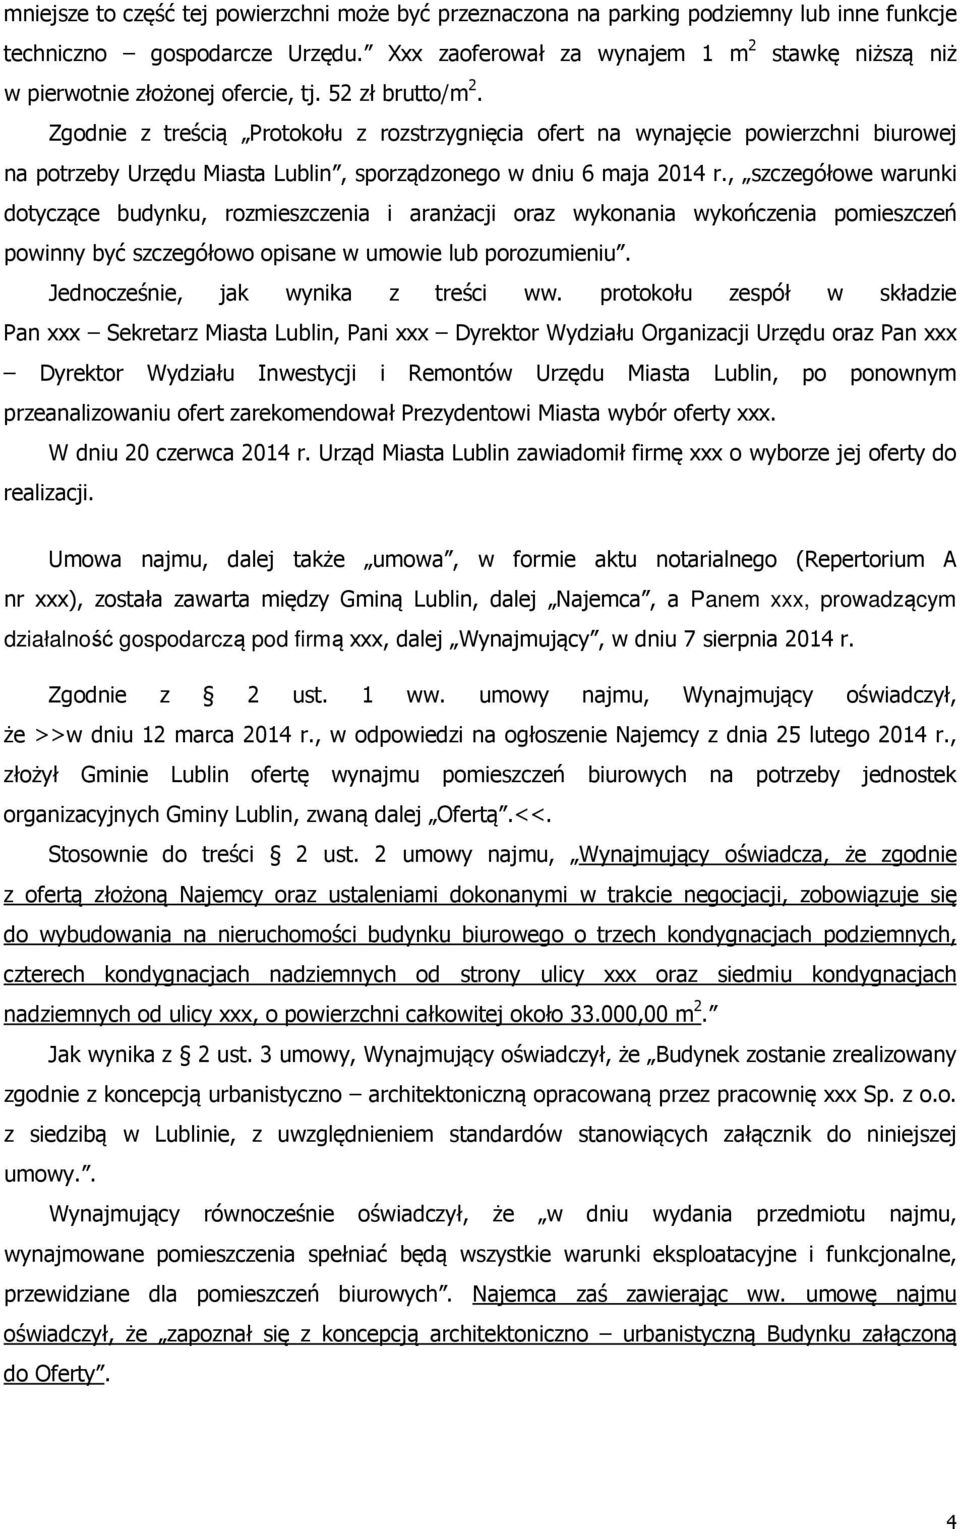 Zgodnie z treścią Protokołu z rozstrzygnięcia ofert na wynajęcie powierzchni biurowej na potrzeby Urzędu Miasta Lublin, sporządzonego w dniu 6 maja 2014 r.